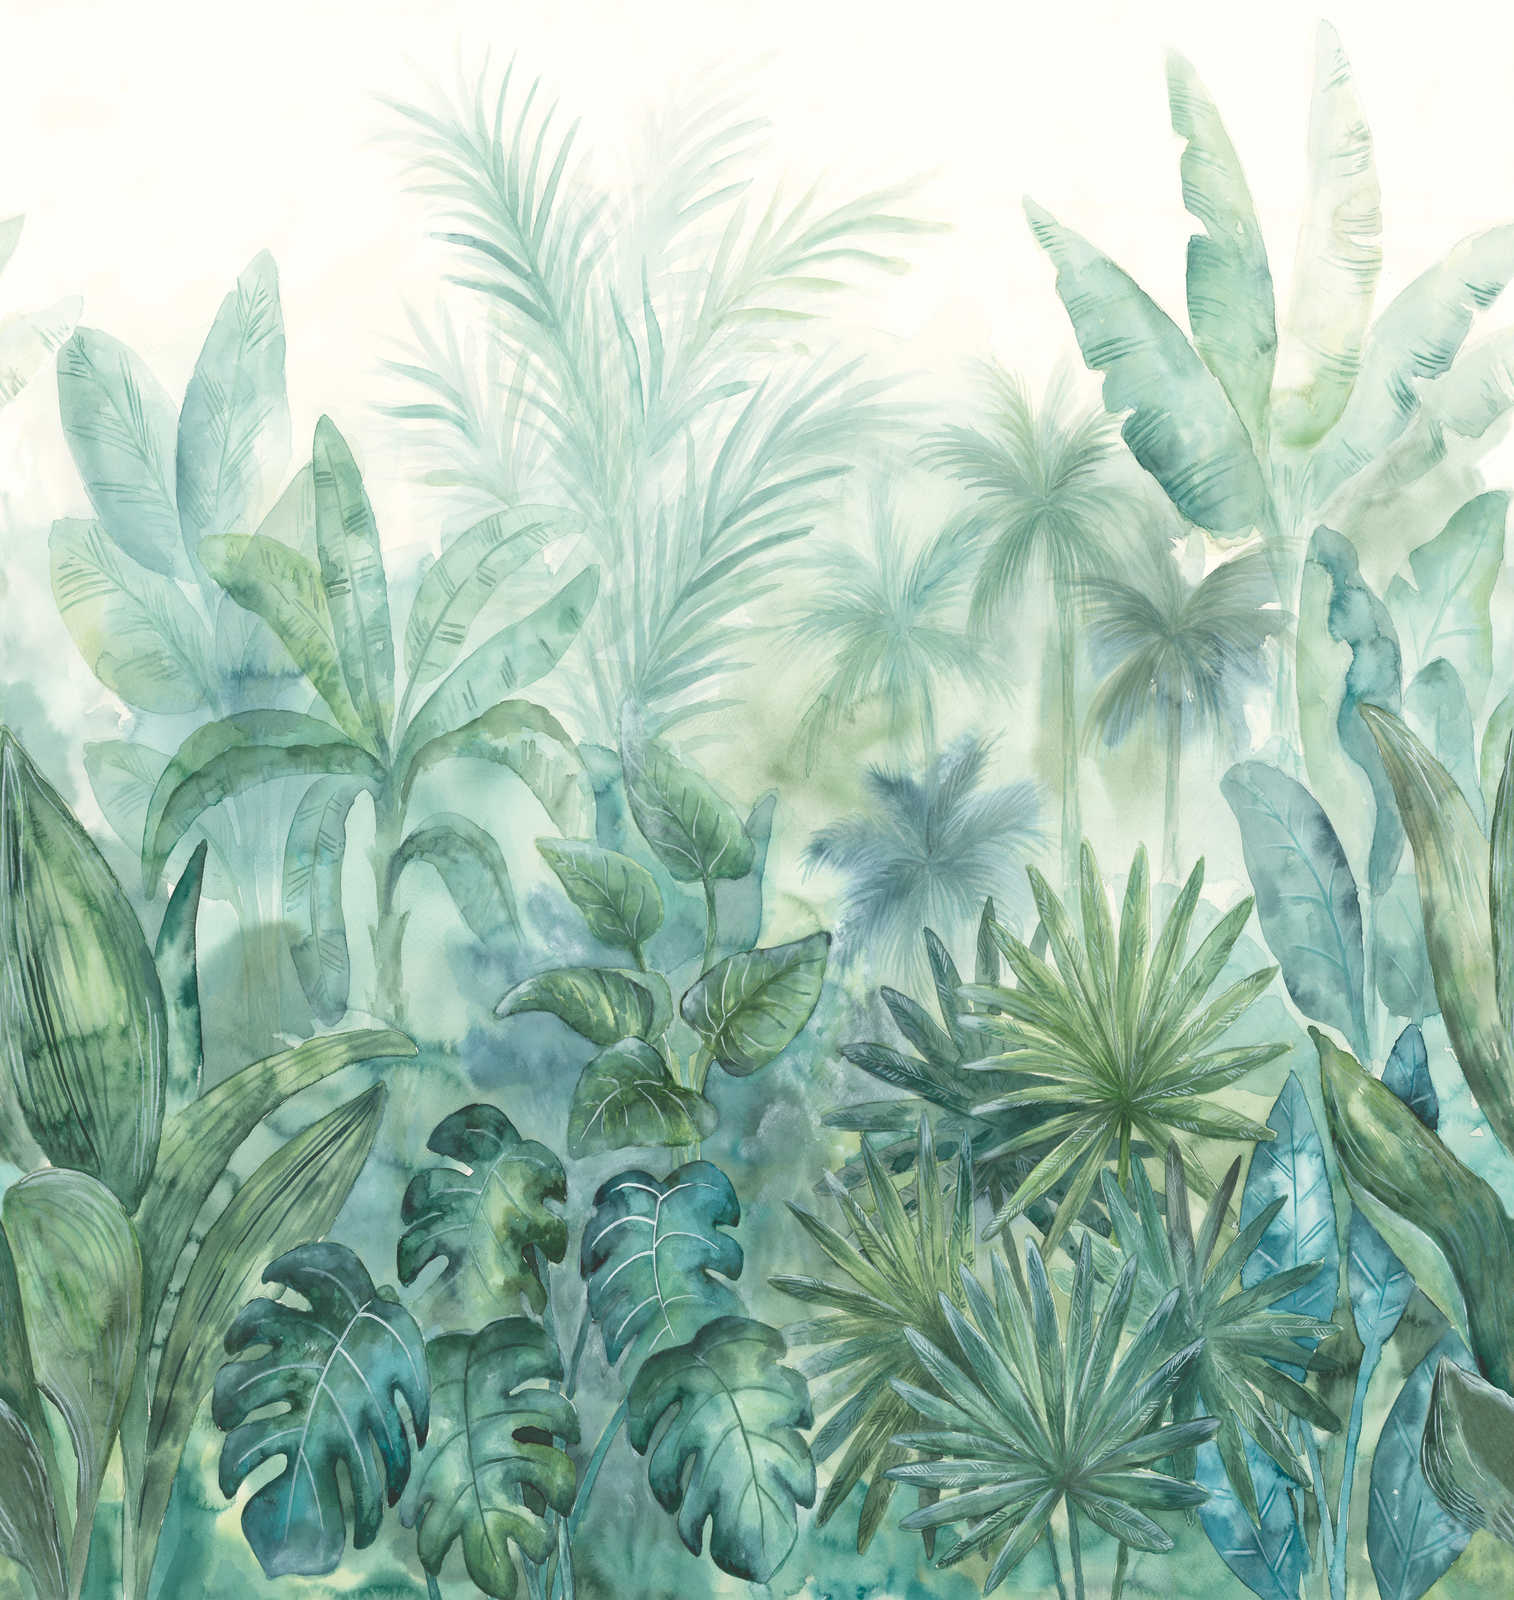             Papel pintado motivo jungla acuarela - verde, azul, crema
        